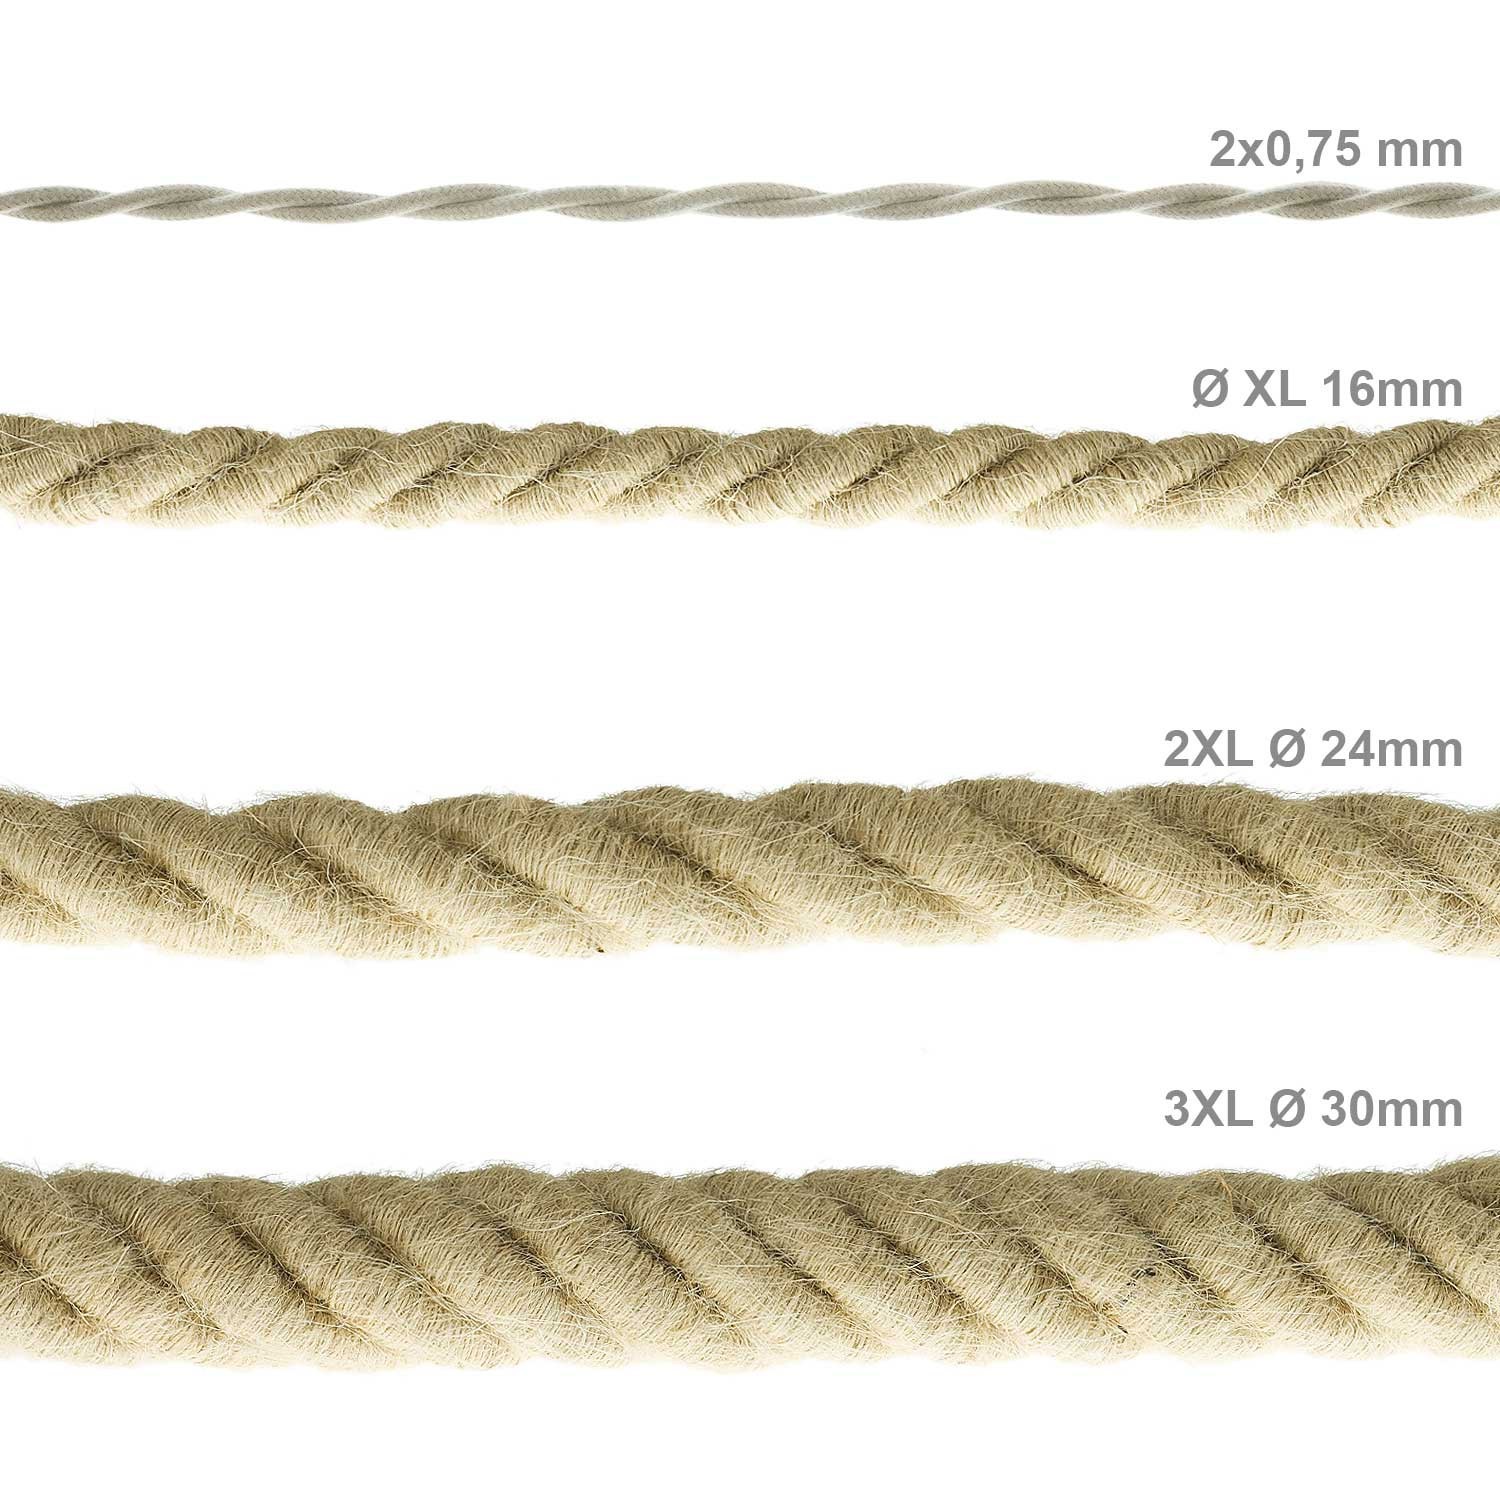 Cordón 2XL, cable eléctrico 3x0,75, recubierto en yute en bruto. Diámetro: 24mm.